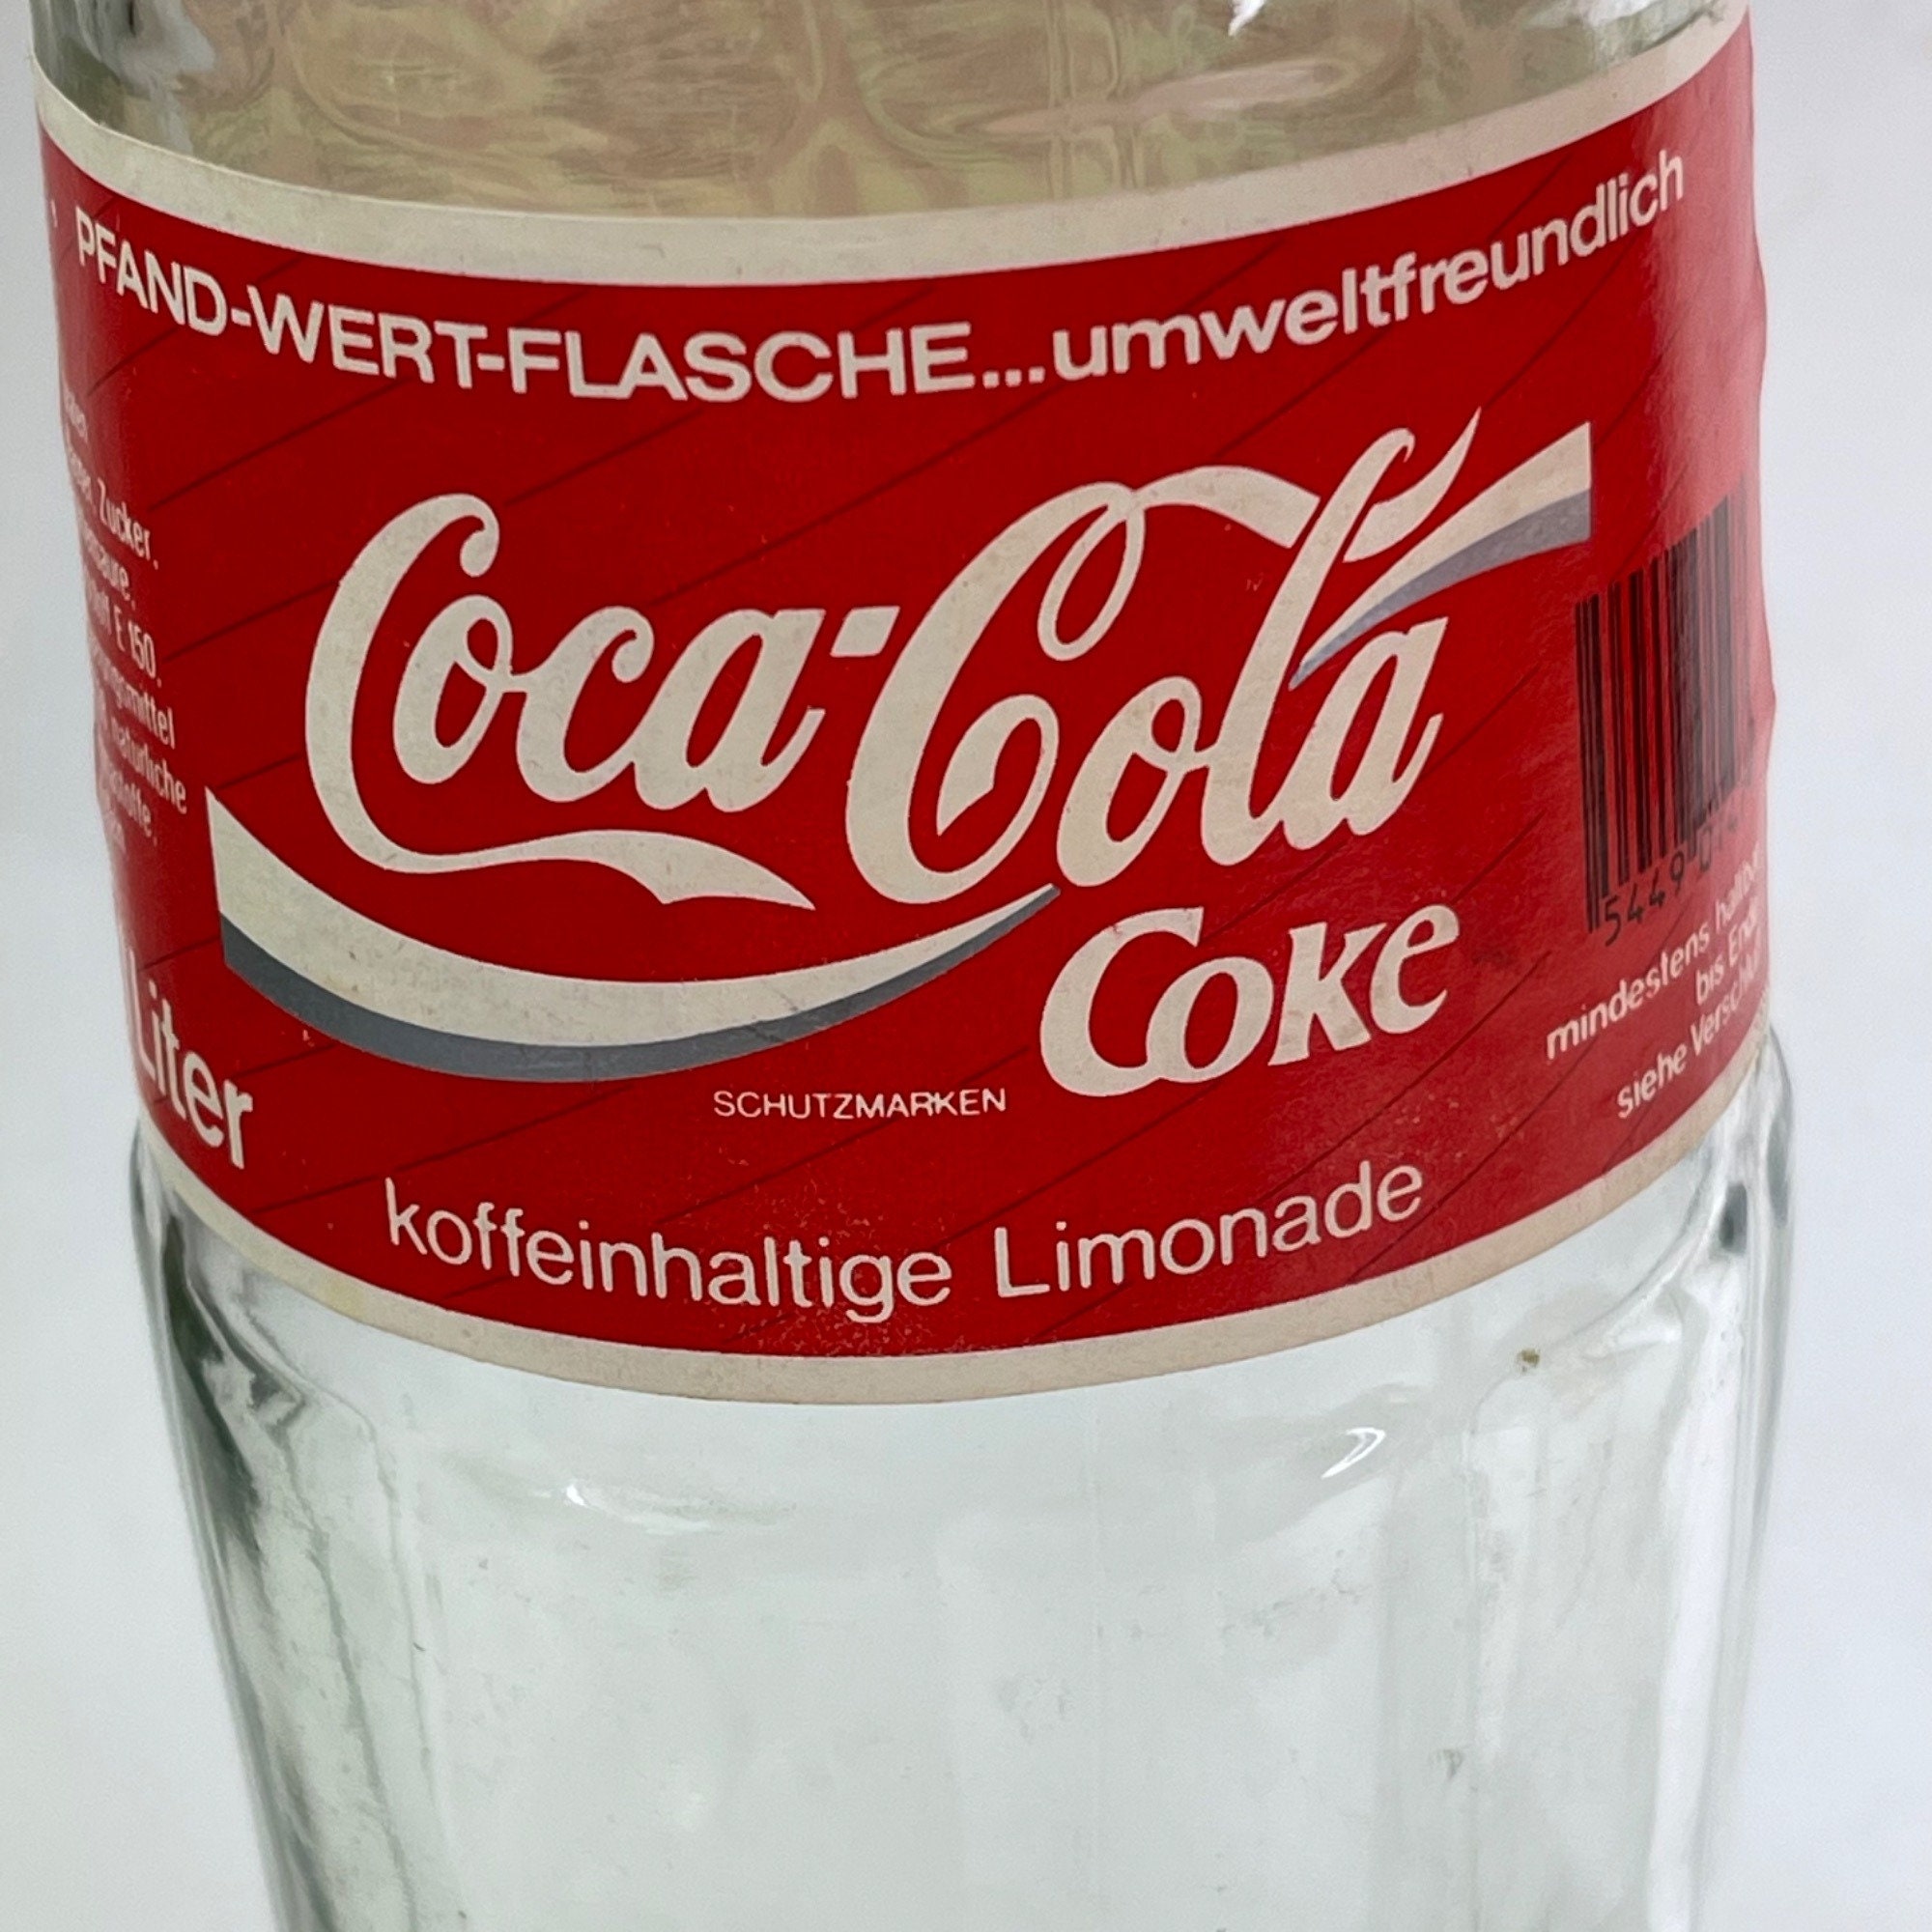 Coke Coca-cola Glass 1 Liter Bottles PFAND-WERT-FLASCHE Schutzmark